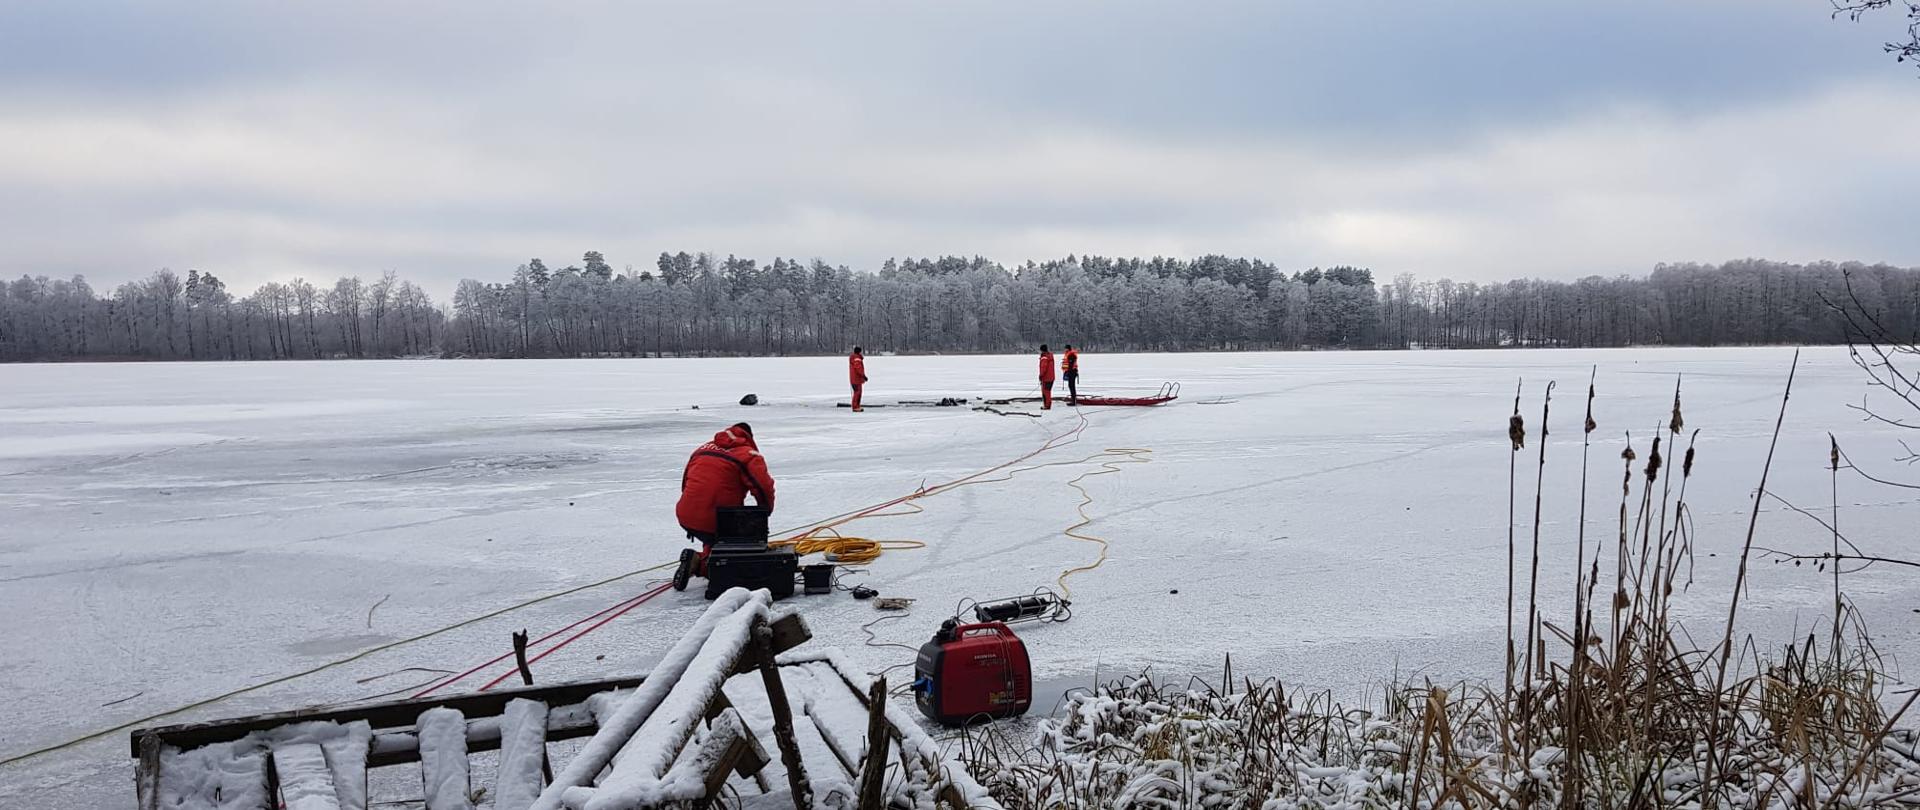 Strażacy-nurkowie na tafli lodu wspomagają pracę nurka pod wodą